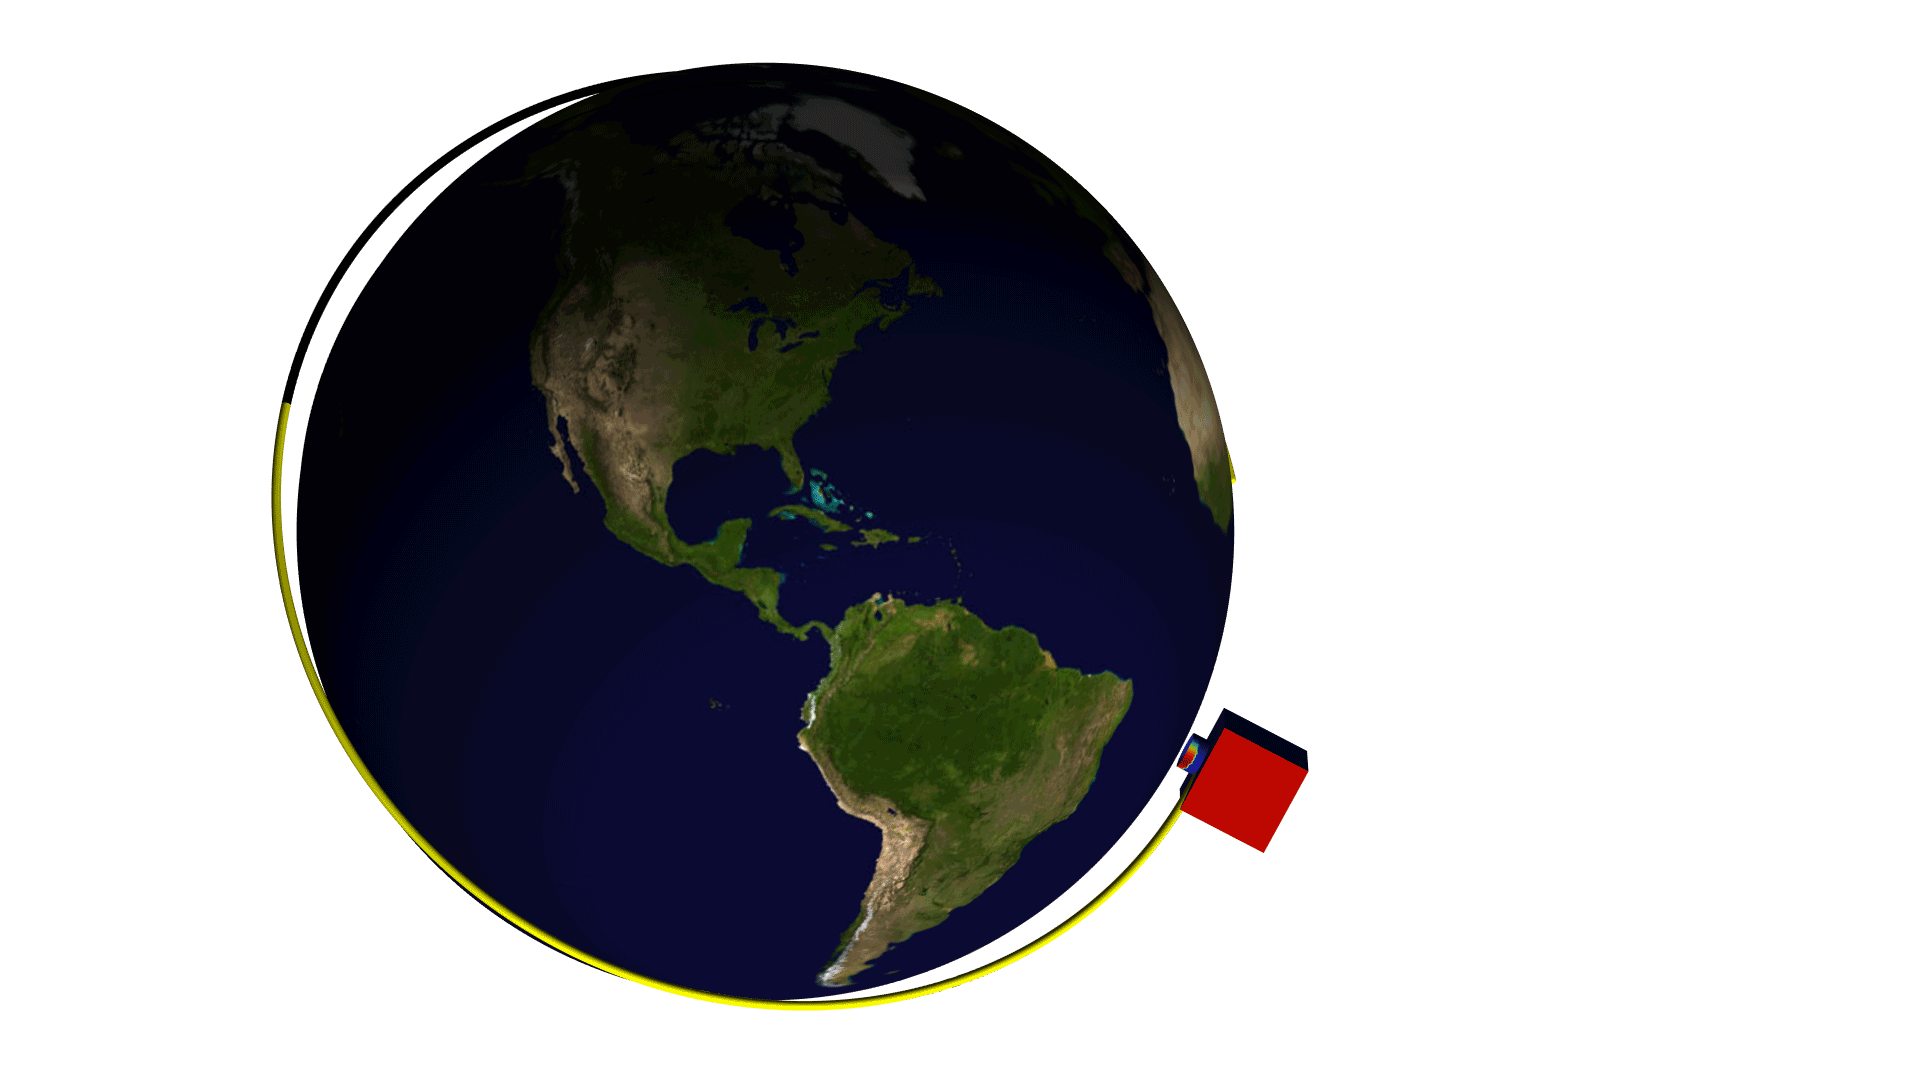 卫星绕地球的运行轨道模型，其中显示入射太阳辐射的大小。